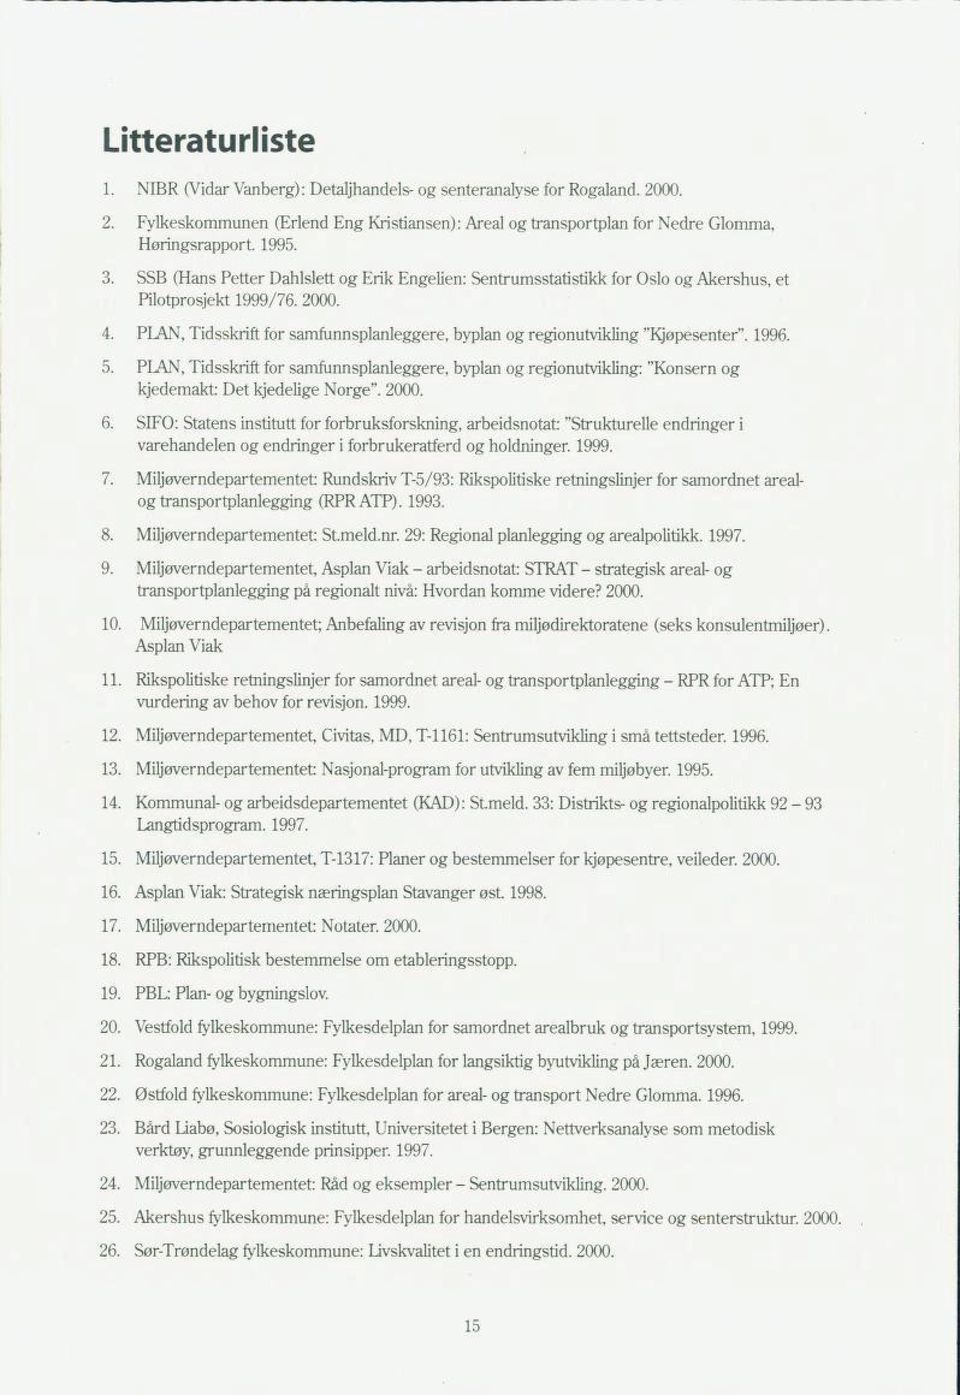 PLAN, Tidsskrift for samfunnsplanleggere, byplan og regionutvikling "Kjøpesenter". 1996. 5.